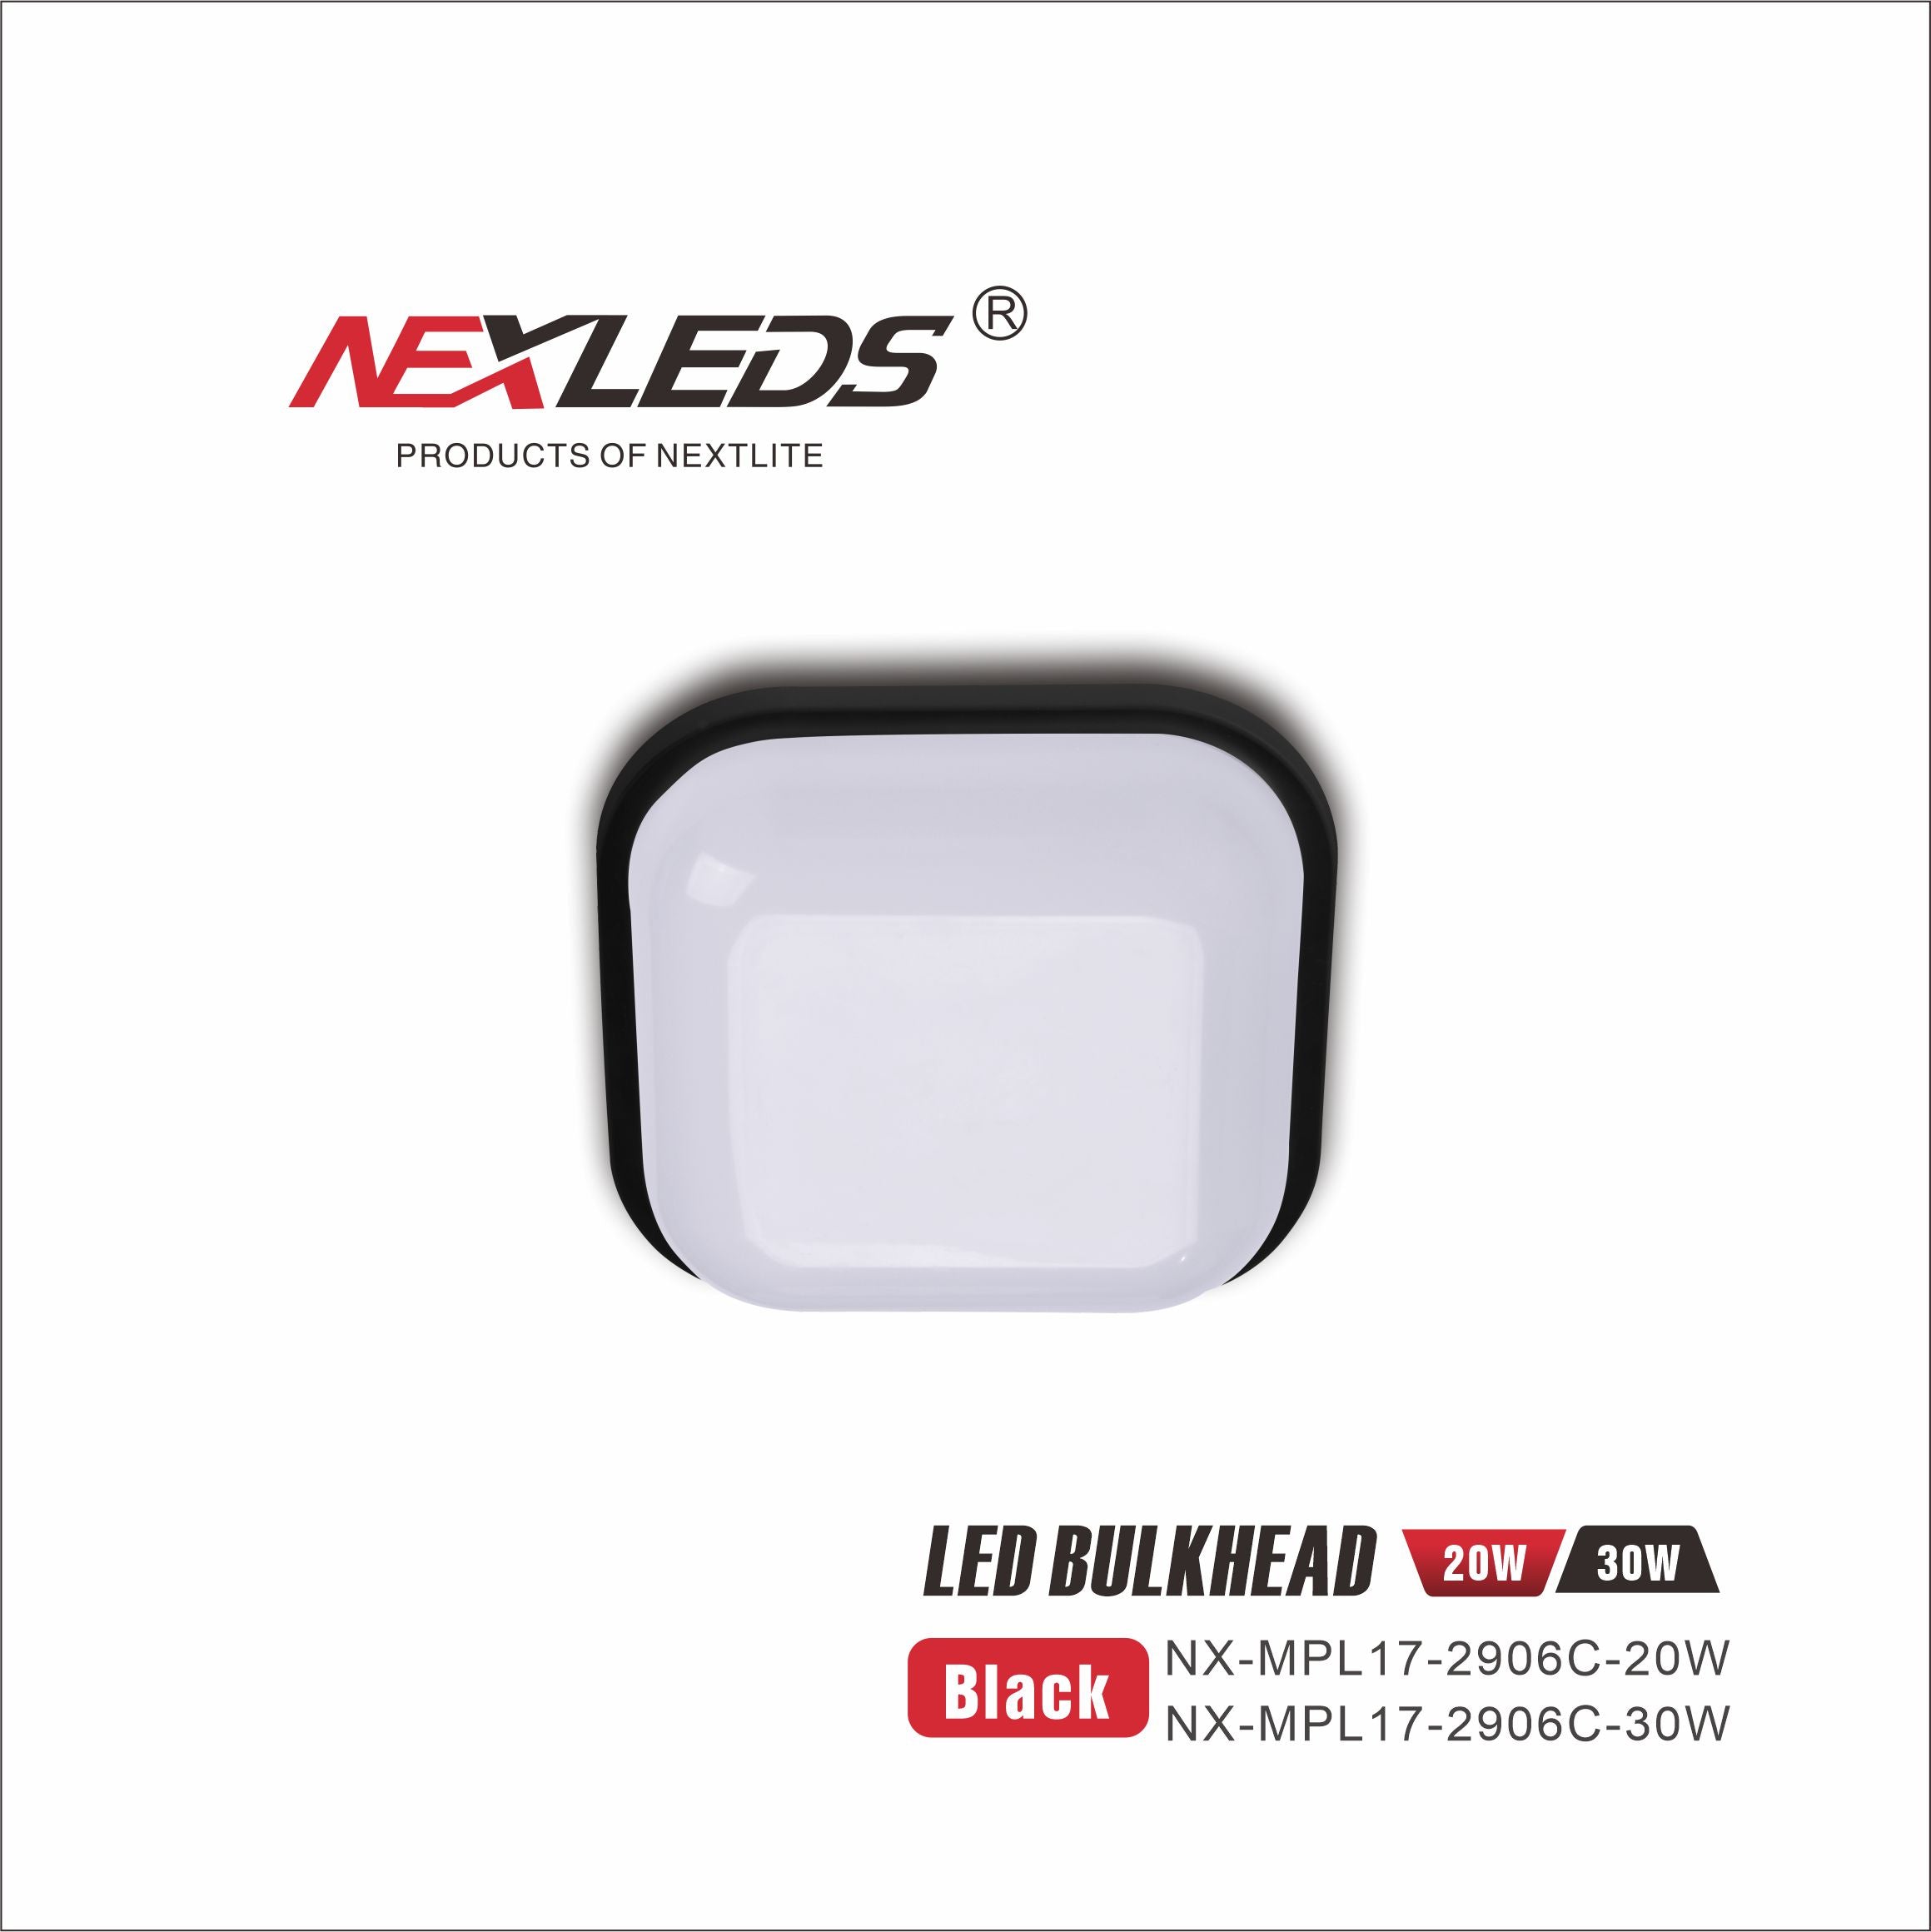 NX-MPL17-2906C-20W & 30W LED BULKHEAD